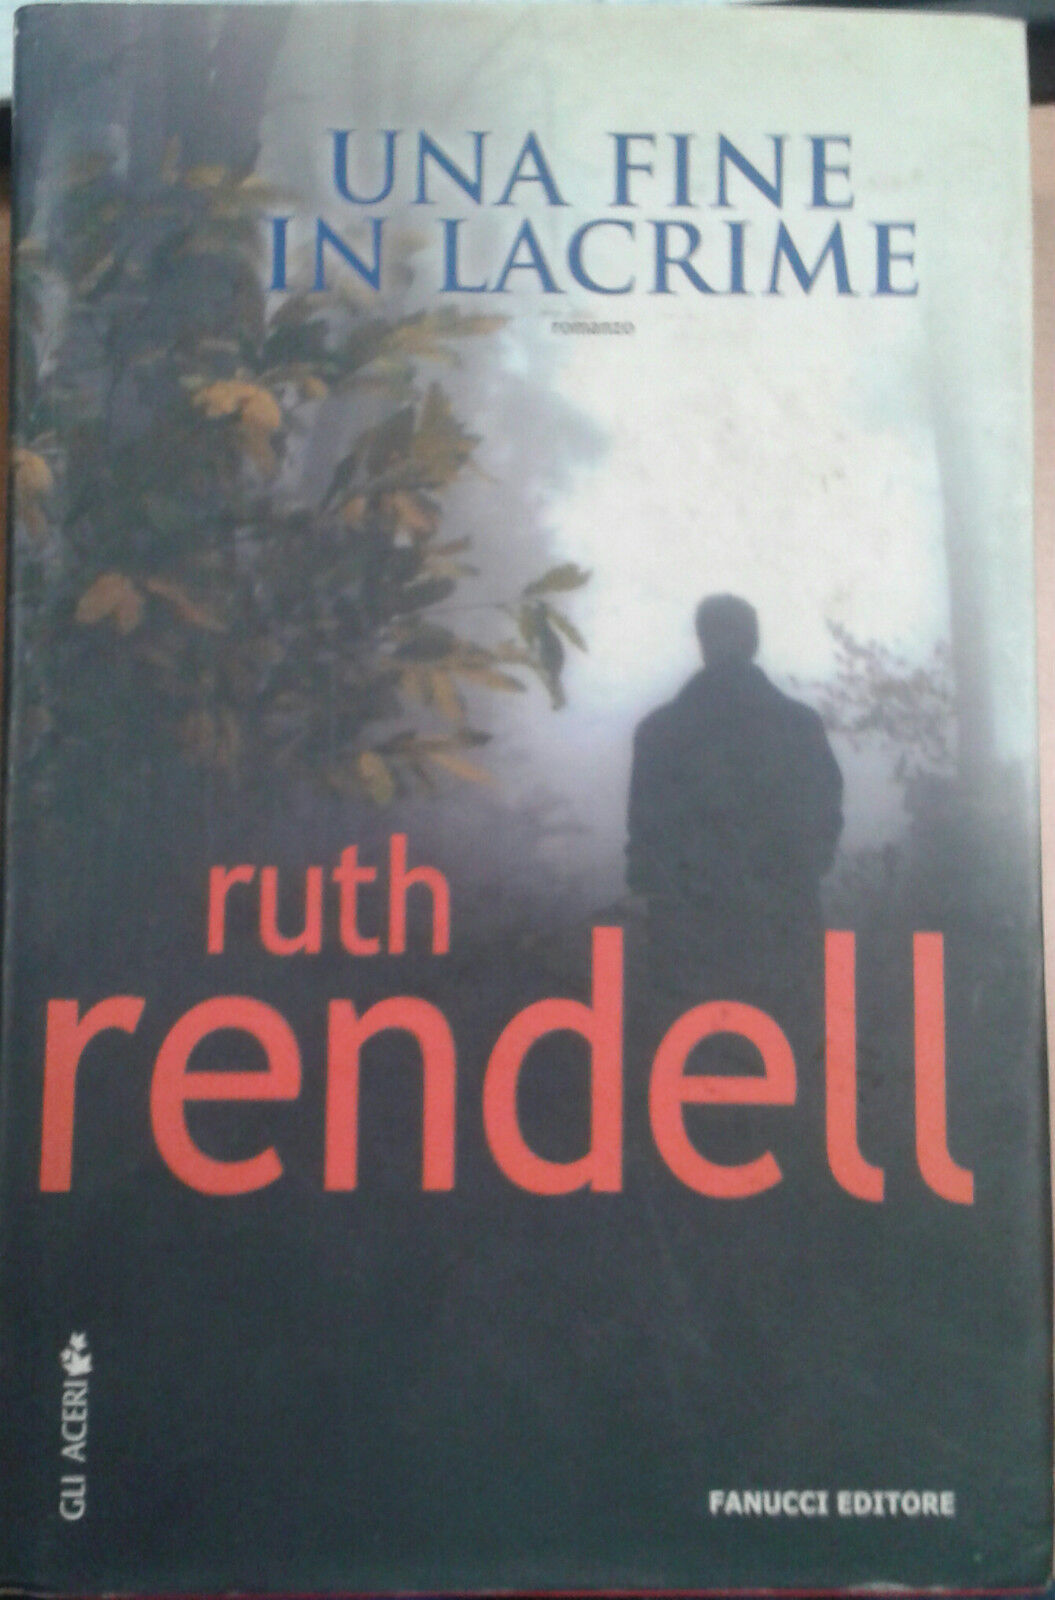 UNA FINE IN LACRIME - RUTH RENDELL - FANUCCI - 2006 - M libro usato